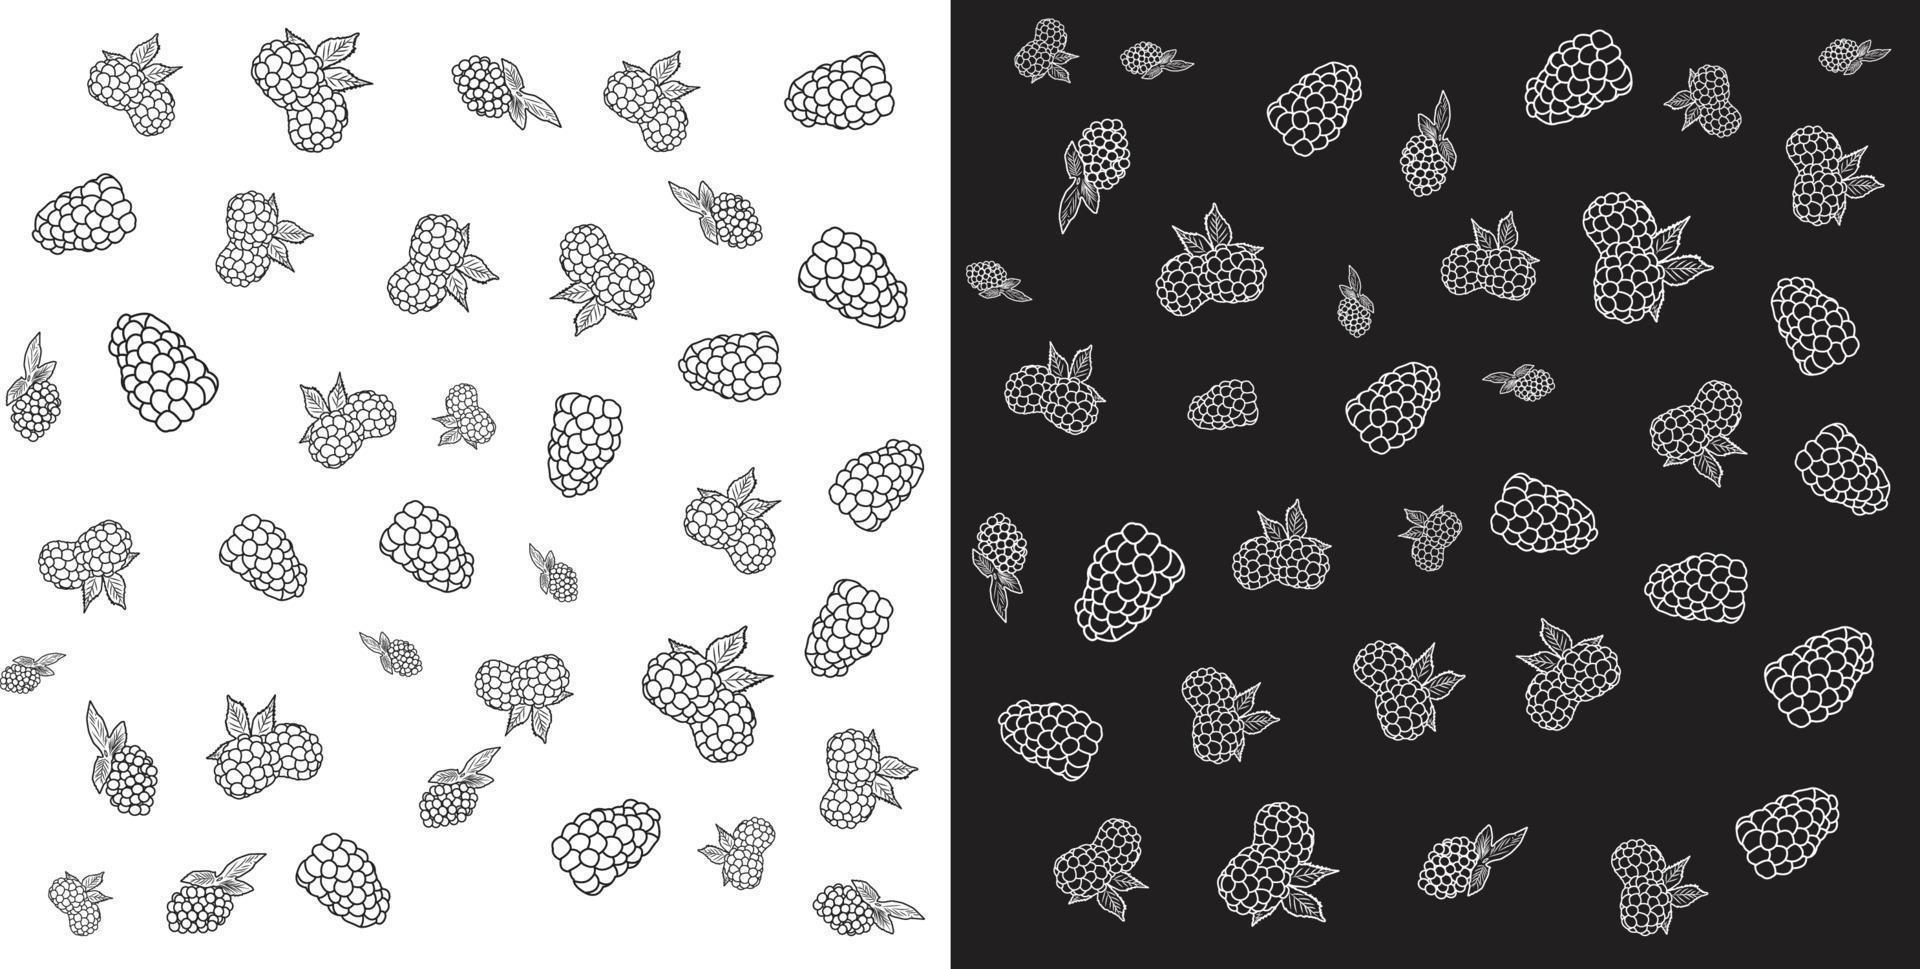 arte lineal de una ilustración de grosella negra de blackberry. toma de fotograma completo del patrón de blackberry. ilustración en blanco y negro de mora. vector